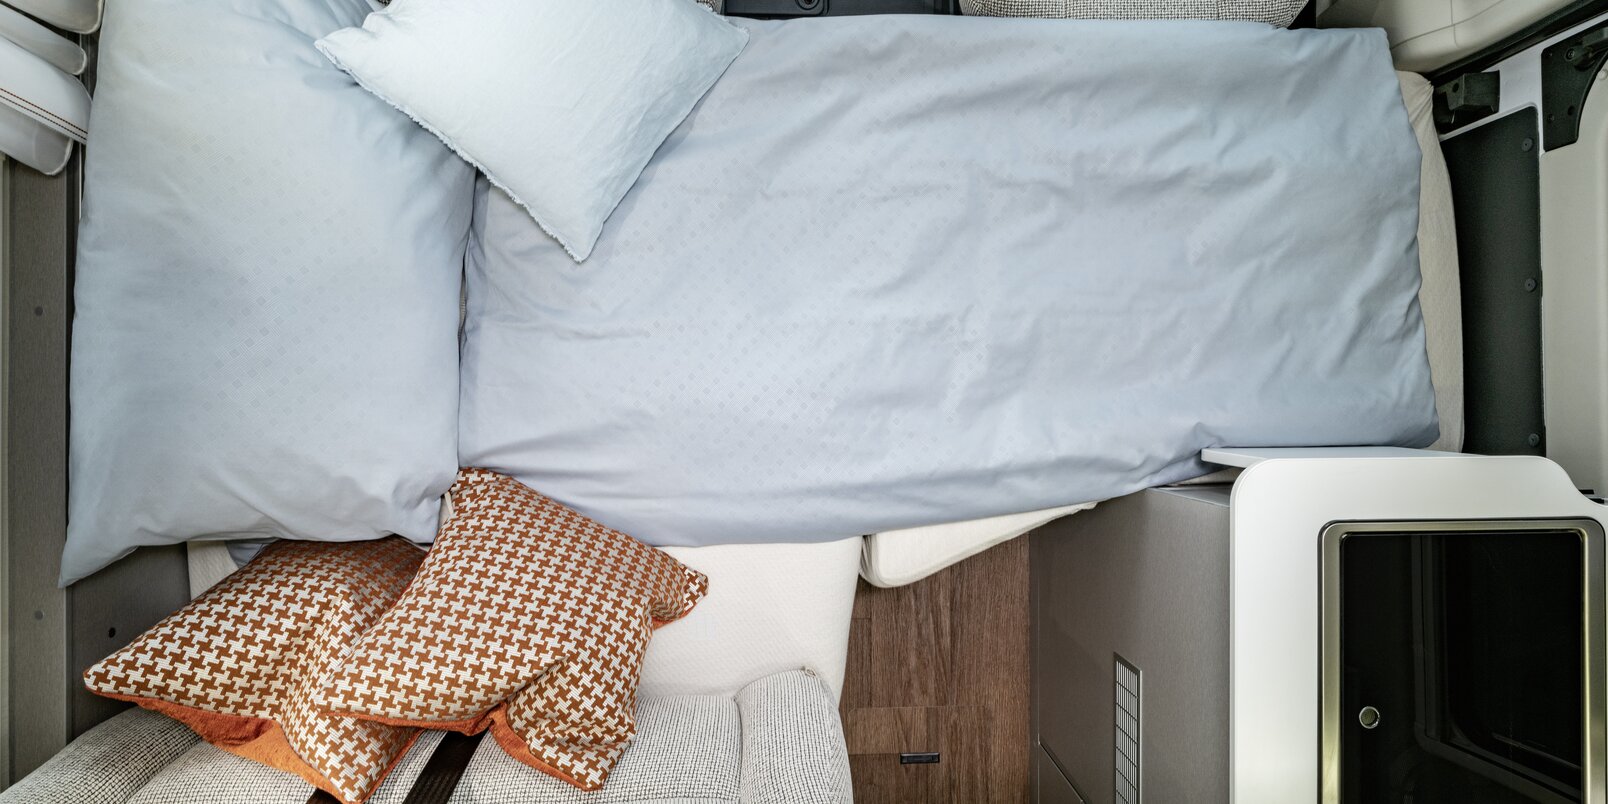 Dinette trasformata in letto, con lenzuola e cuscino decorativo nel Free 602 HYMER